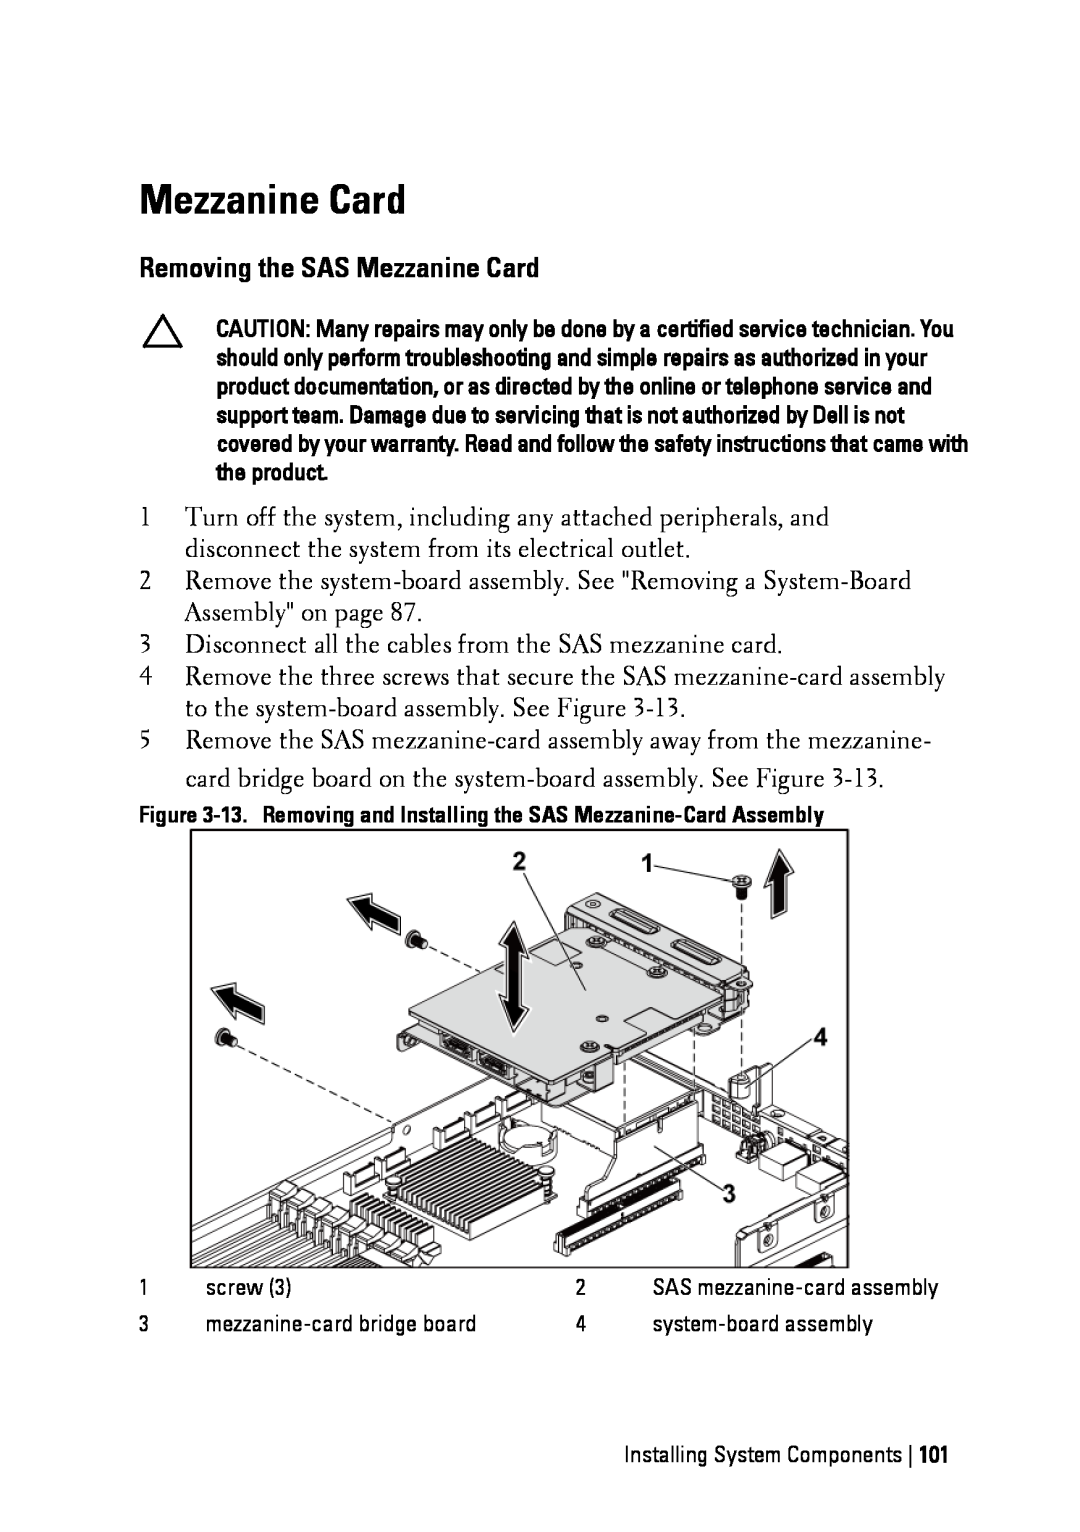 Dell C6145 manual Removing the SAS Mezzanine Card 